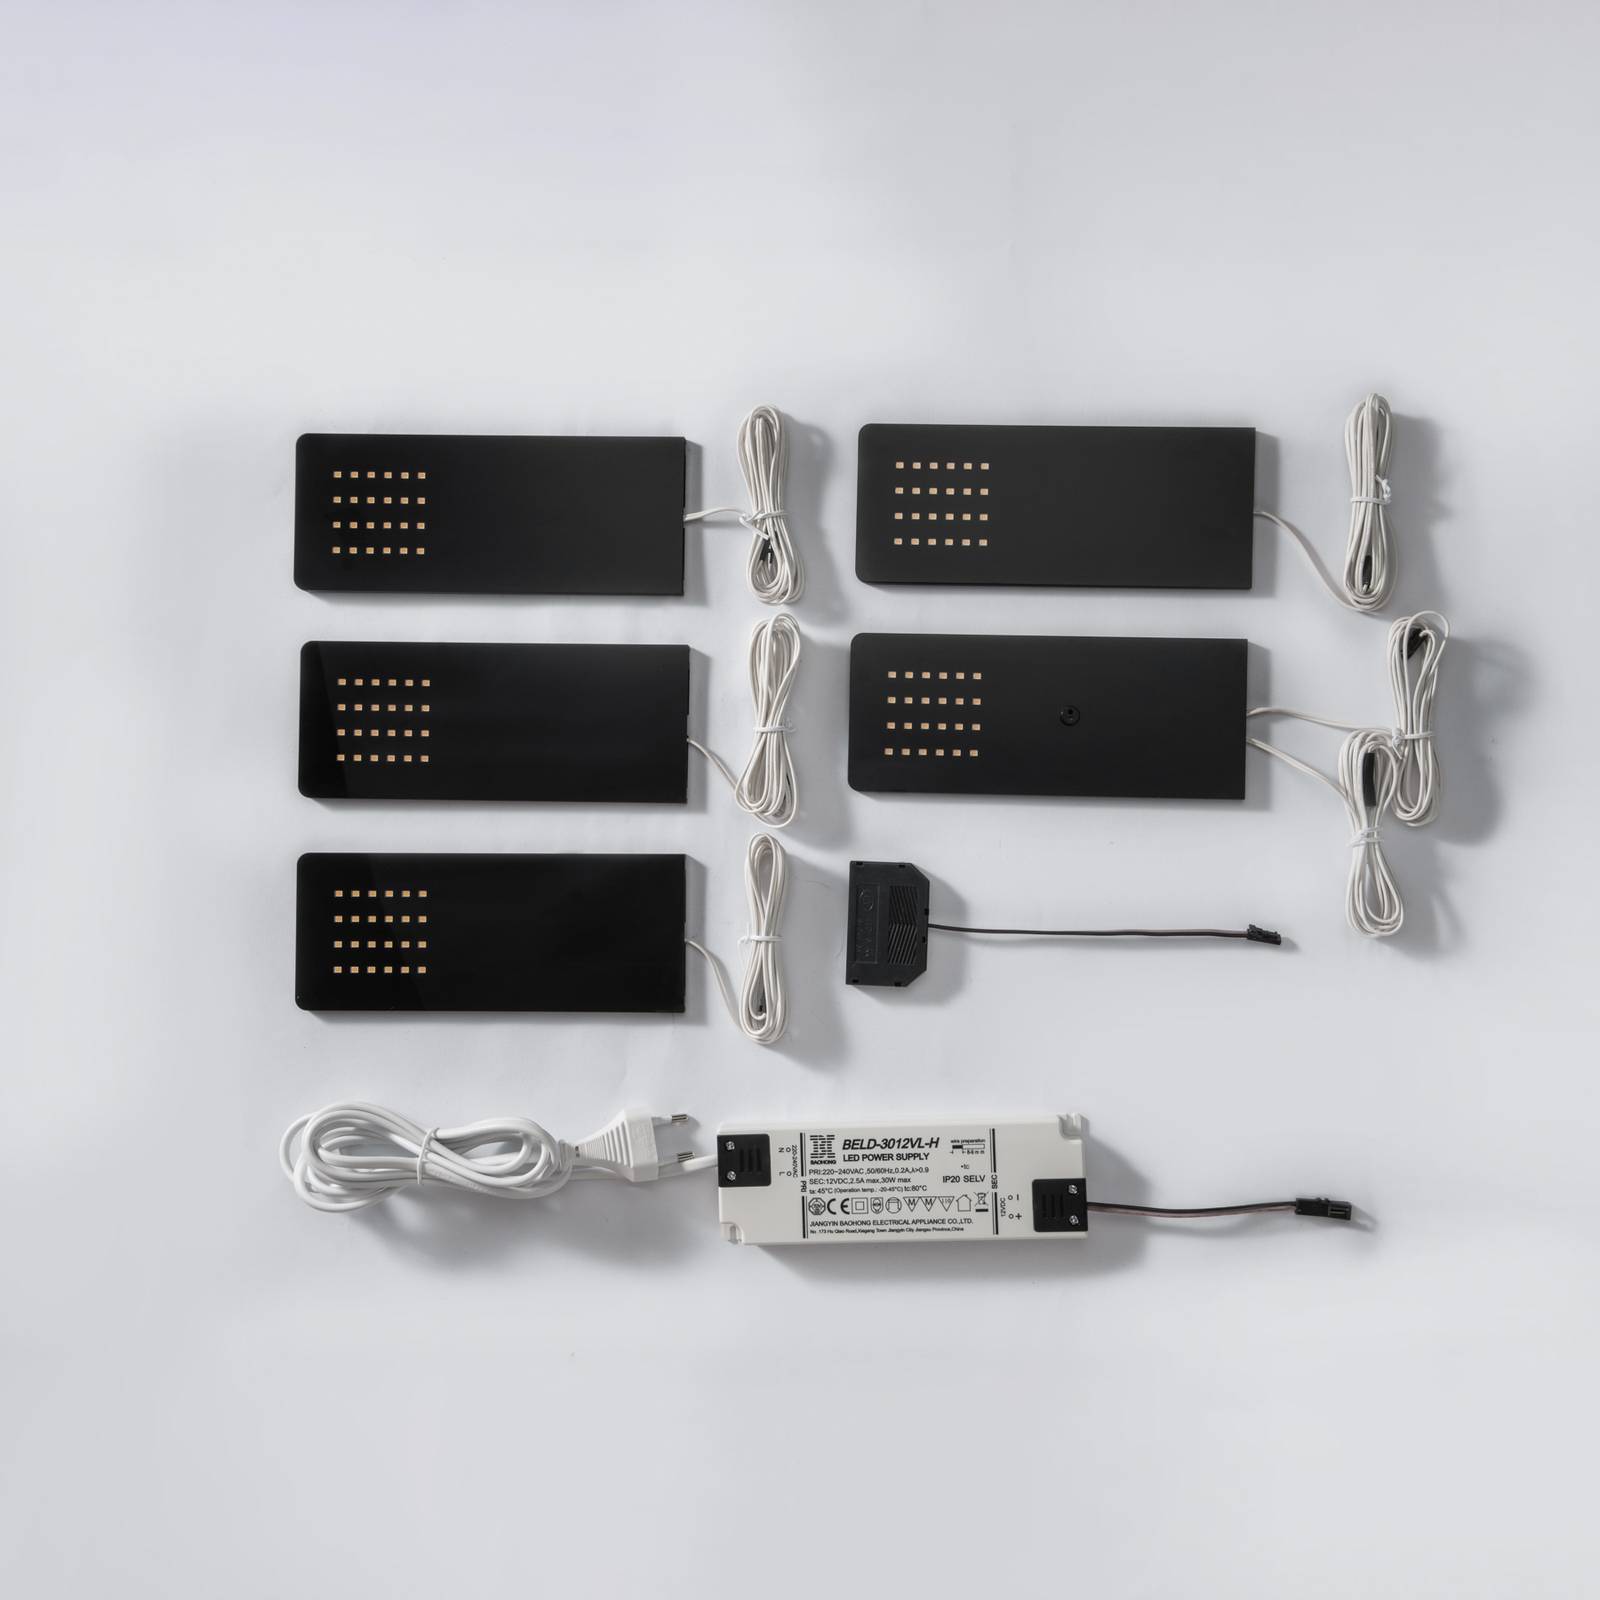 Prios Rixa LED-Unterbauleuchte, schwarz, 5 Stück